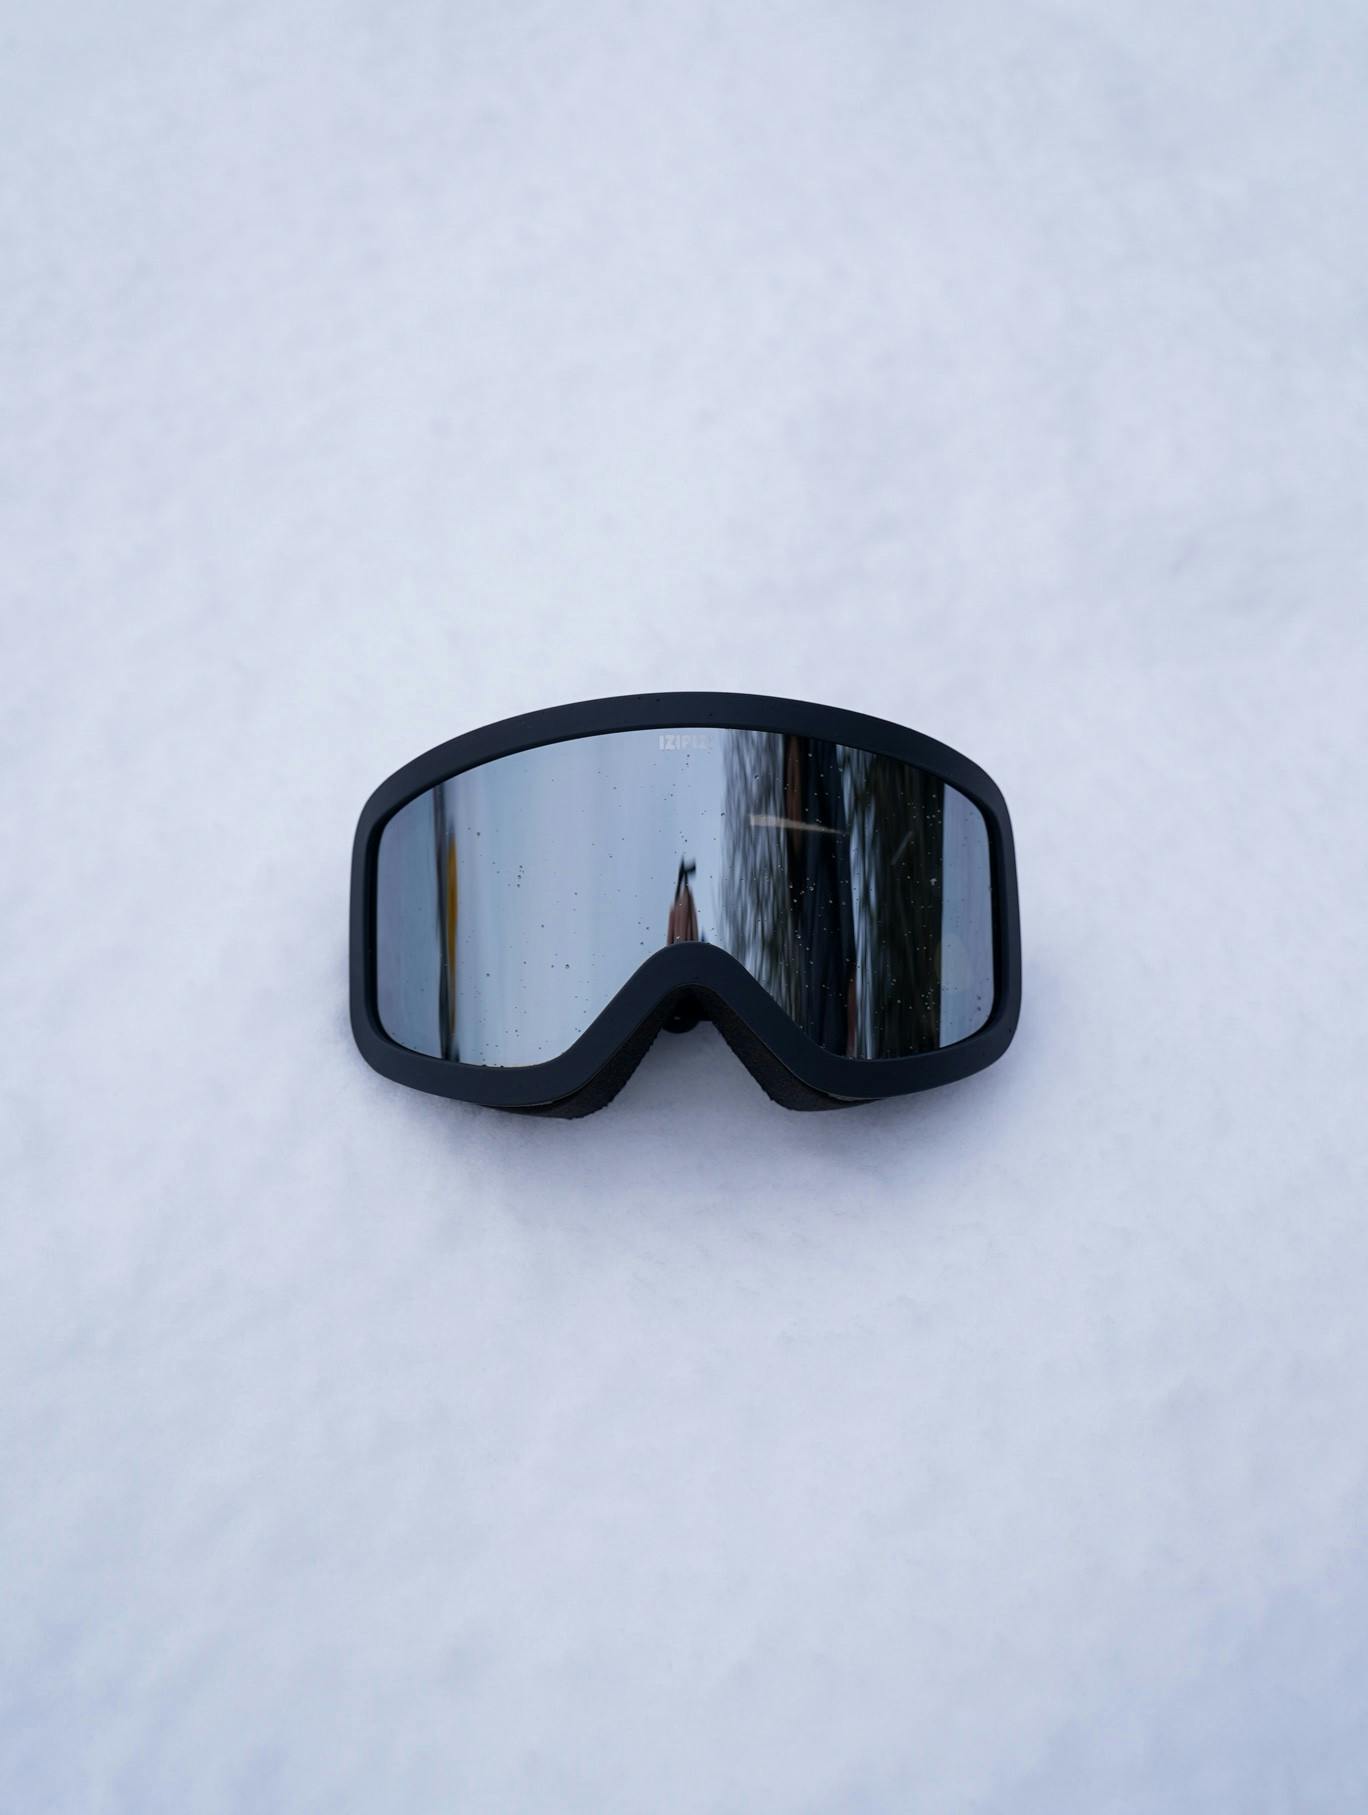 Ski goggles, skiing, mountain holiday, ski outfit